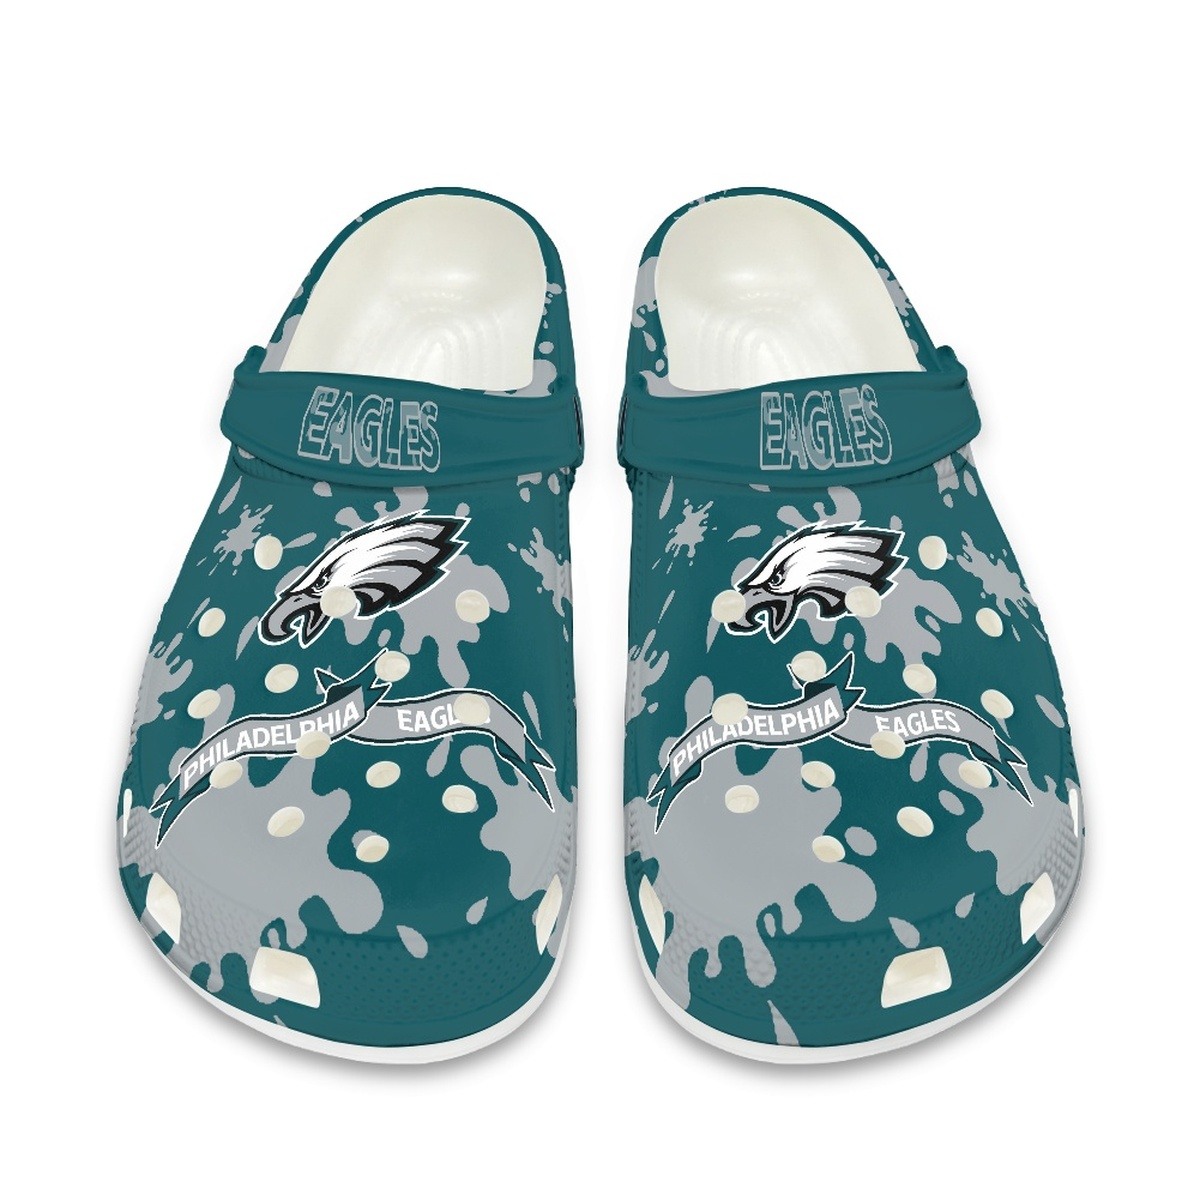 Philadelphia Eagles Shoes cute style #4 Crocs Shoes for fans -Jack ...